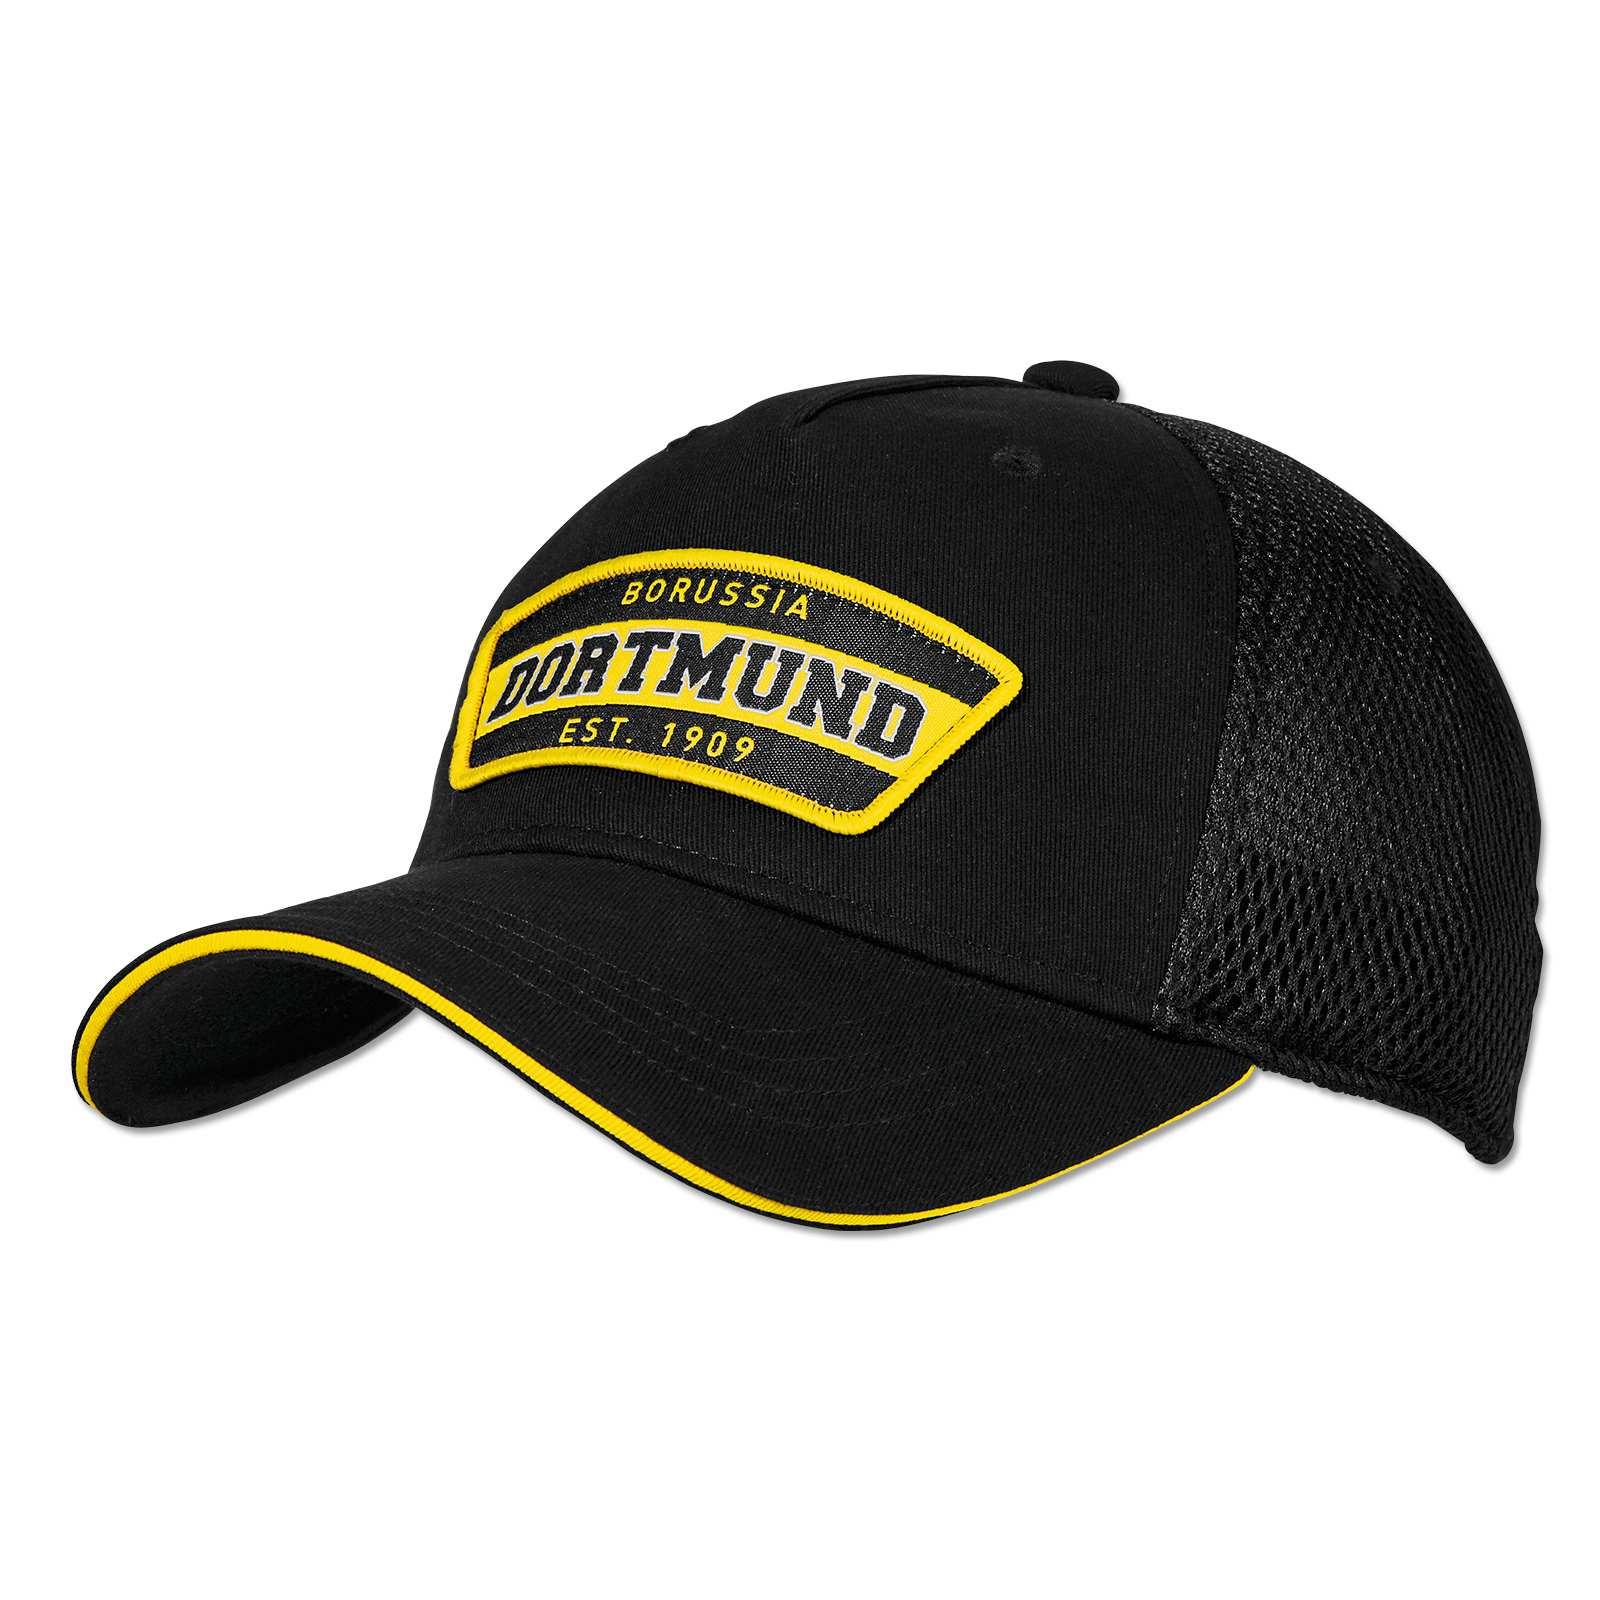 Fanshop Lünen Basecap Pirat Dortmund Kappe Cap mit Stick Baseballcap Mütze Fahne schwarz/gelb Piraten